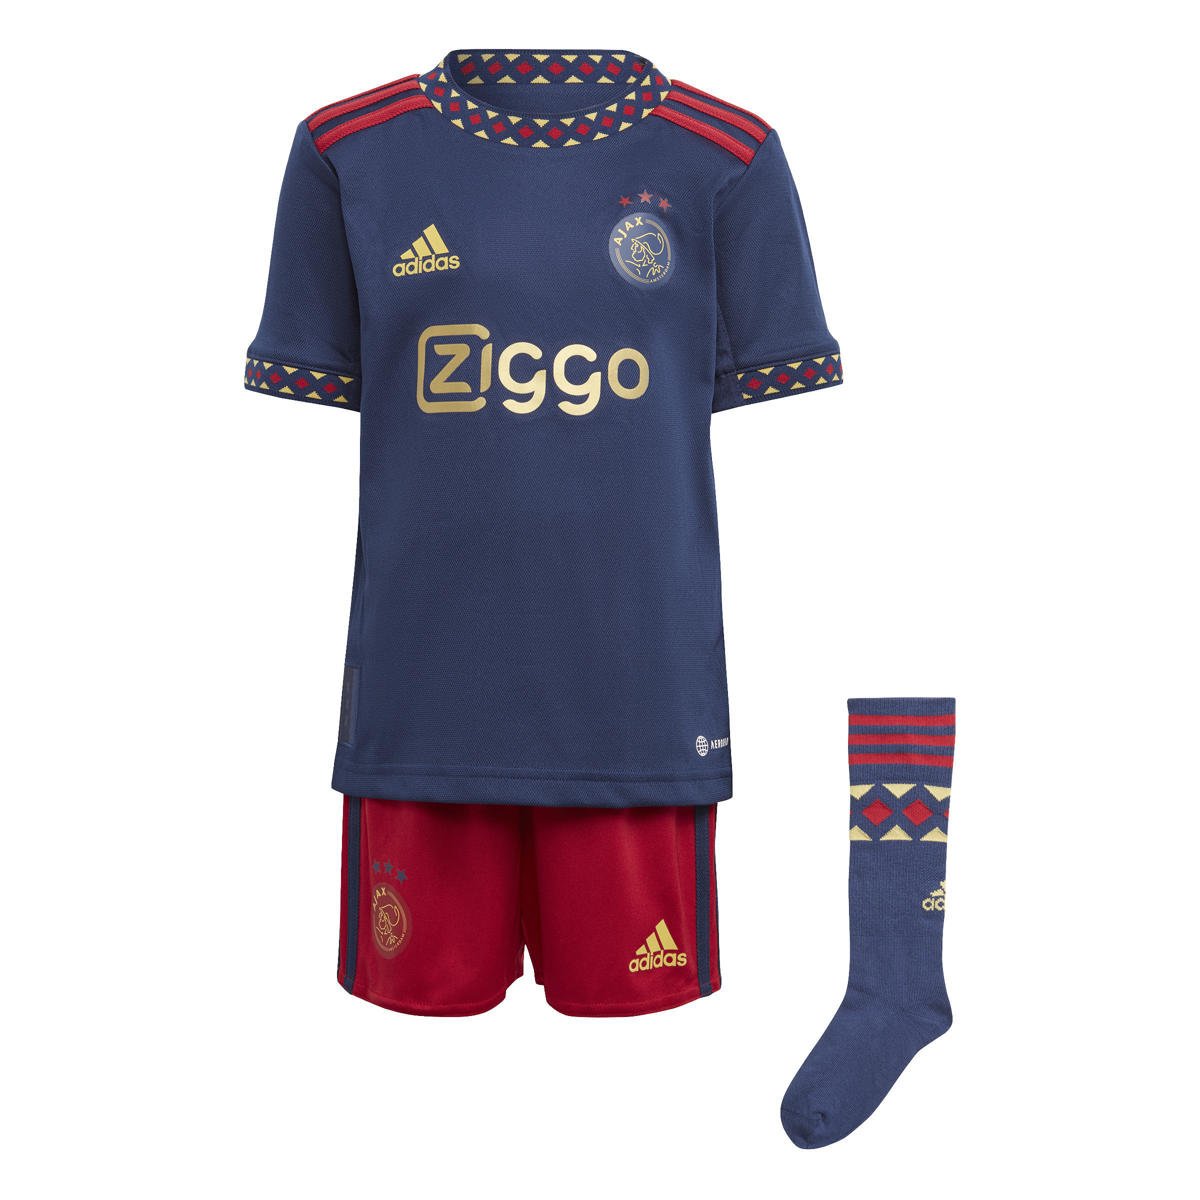 Zeeman Speeltoestellen Norm adidas Performance Junior Ajax Amsterdam voetbaltenue uit | wehkamp